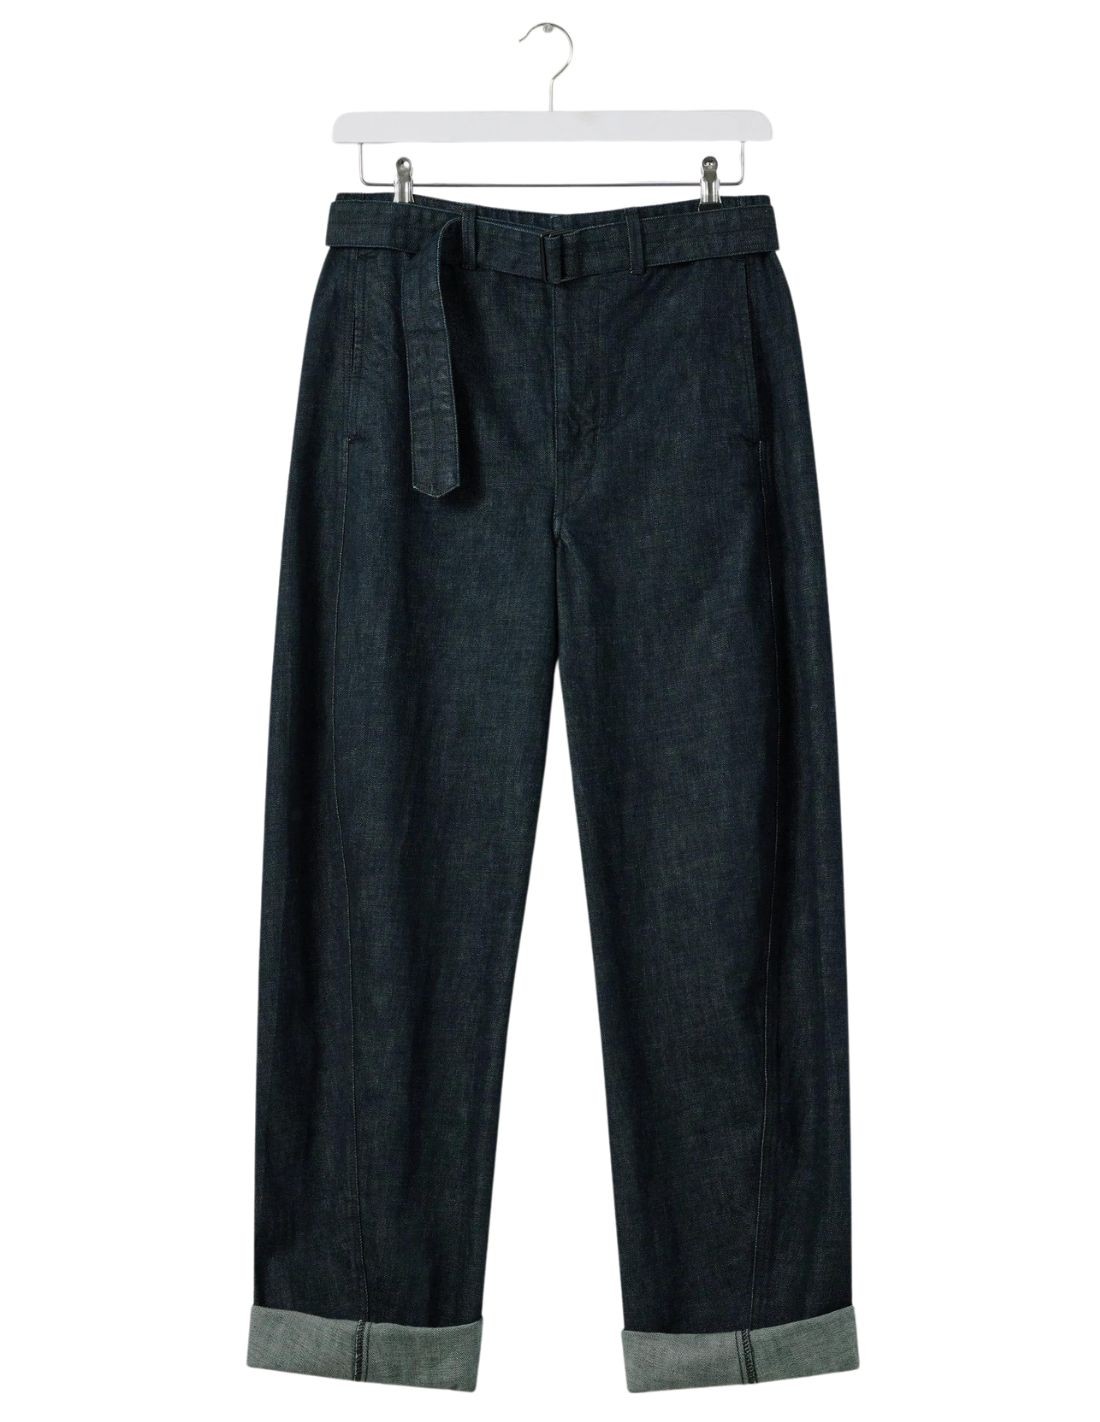 Twisted belted pants - indigo